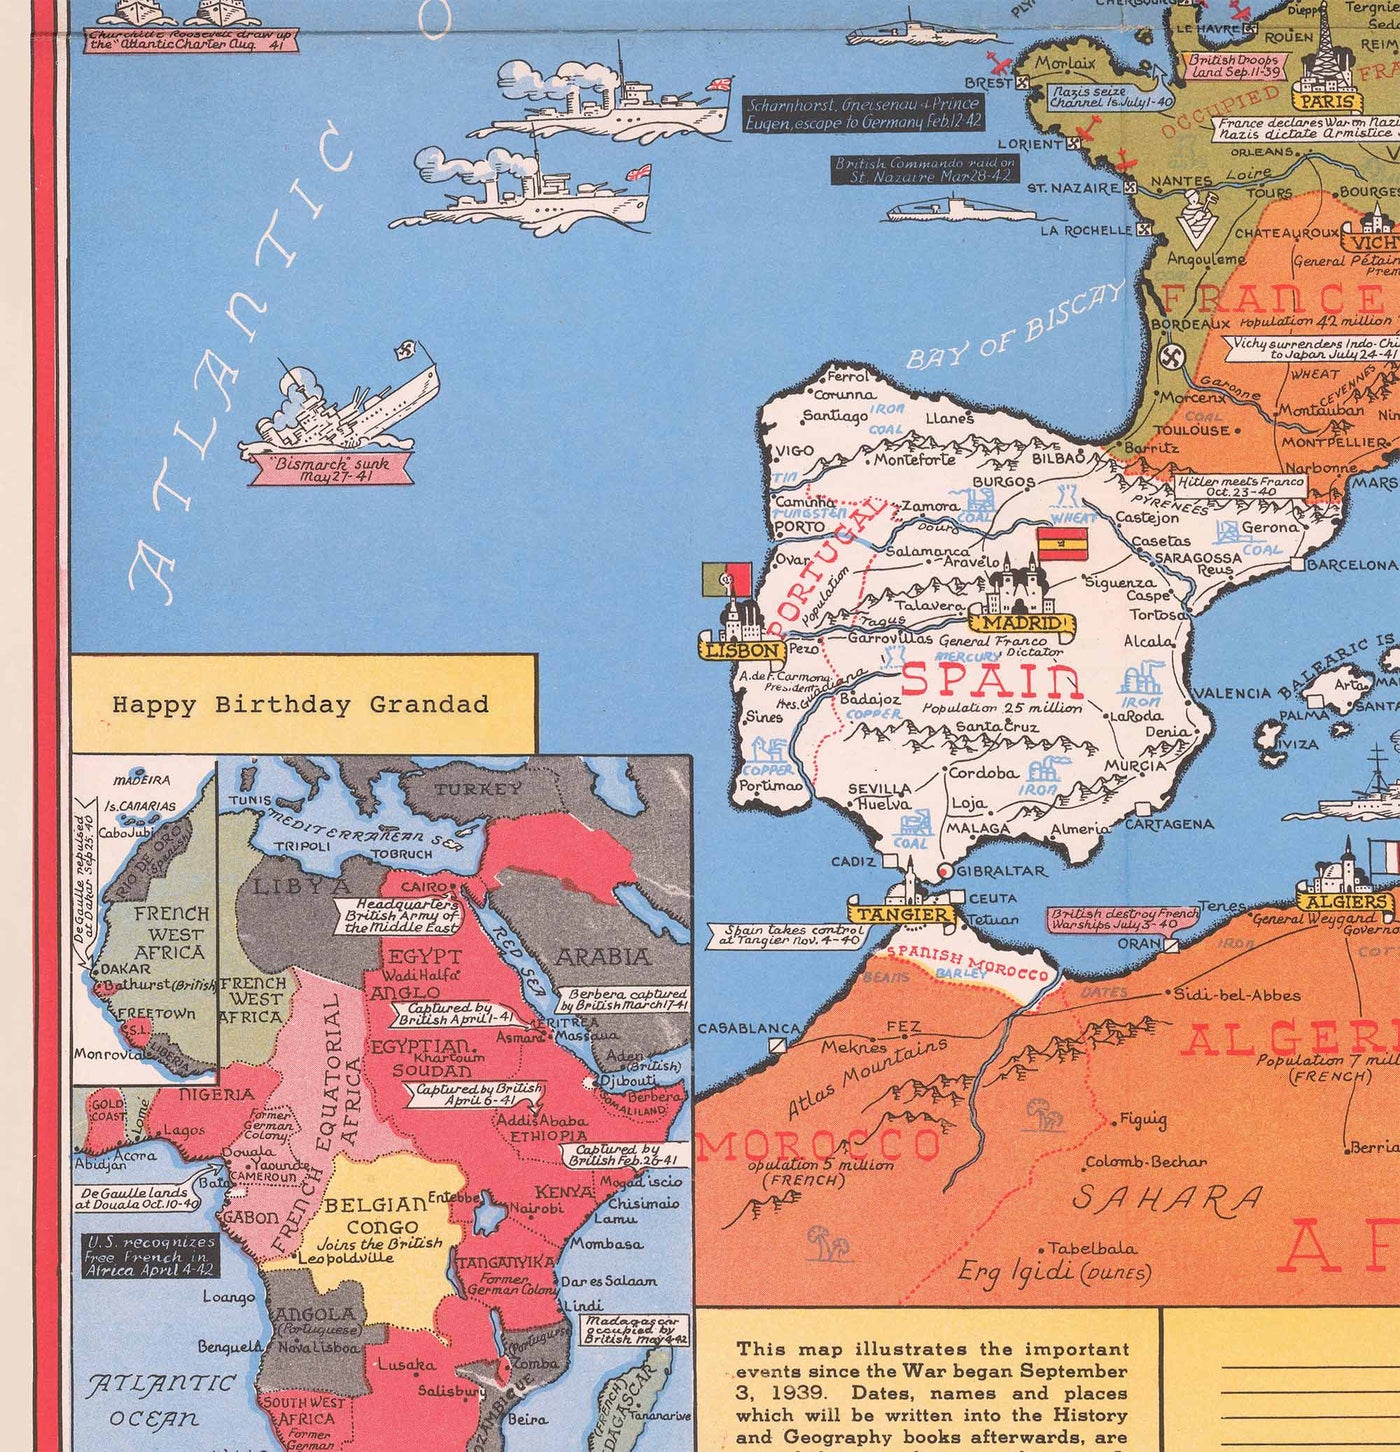 Antiguo mapa de la Segunda Guerra Mundial del Pacífico y el Lejano Oriente en 1942 por Stanley Turner - "Eventos fechados" Japón, EE.UU., Gran Bretaña, Pacífico, URSS